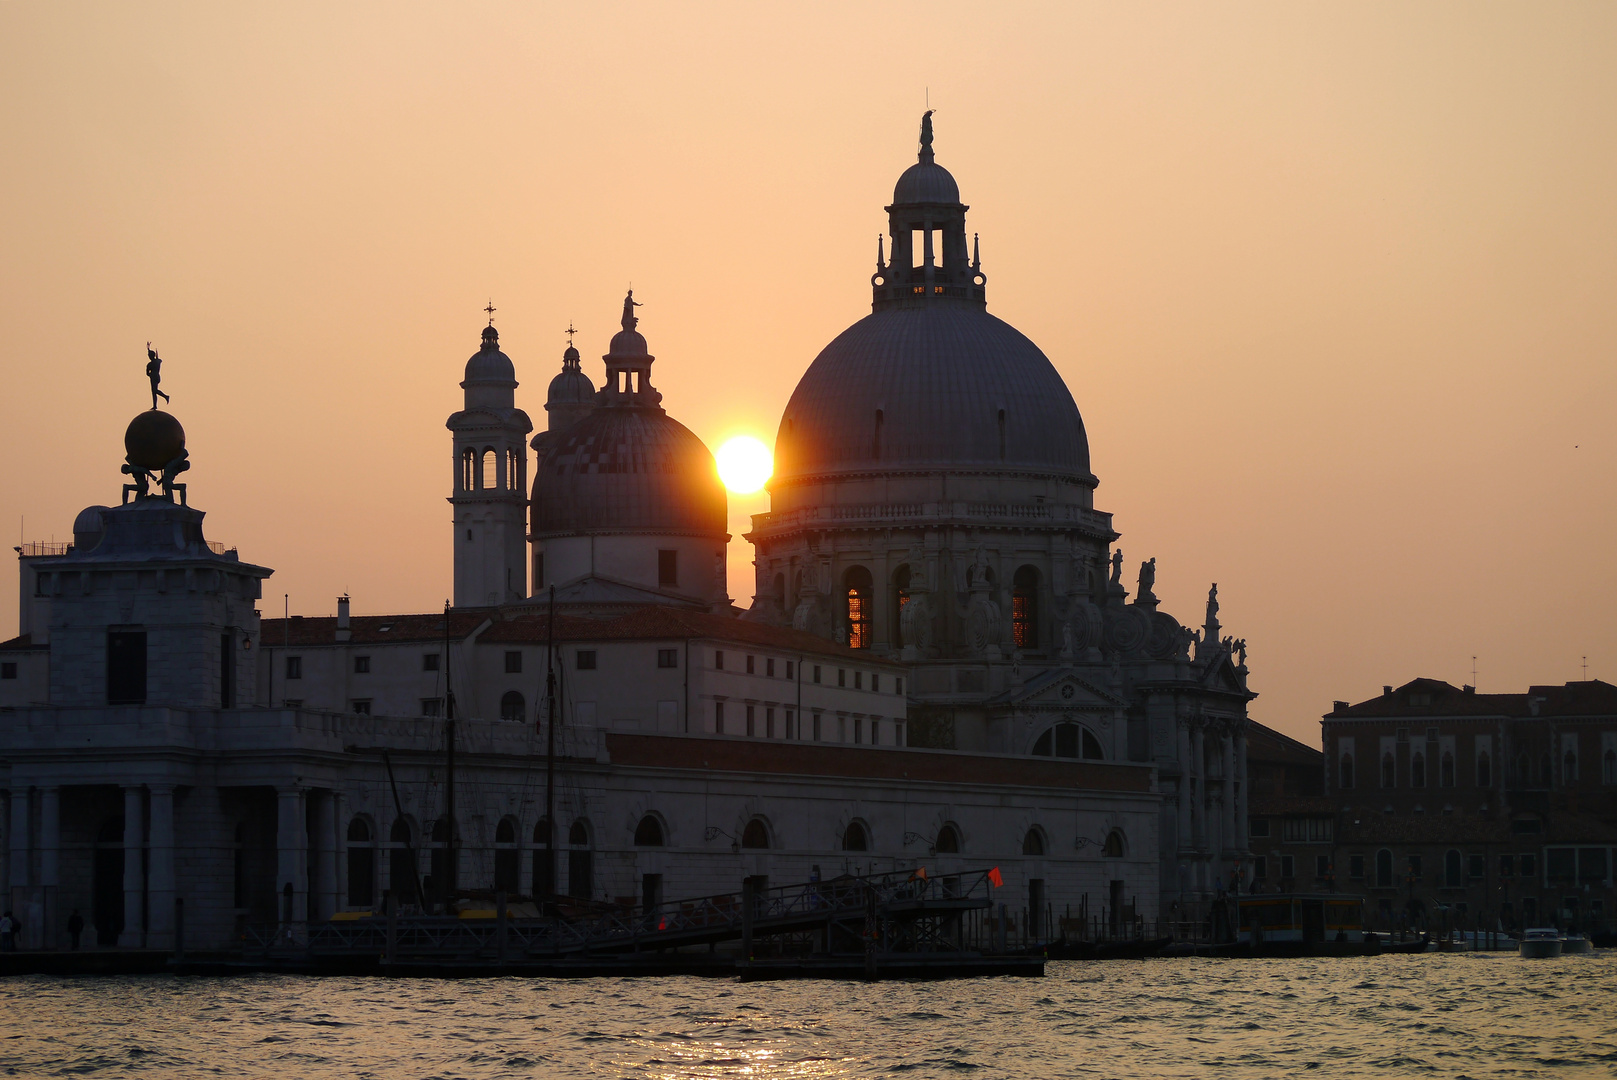 Venedig - Santa Maria della Salute